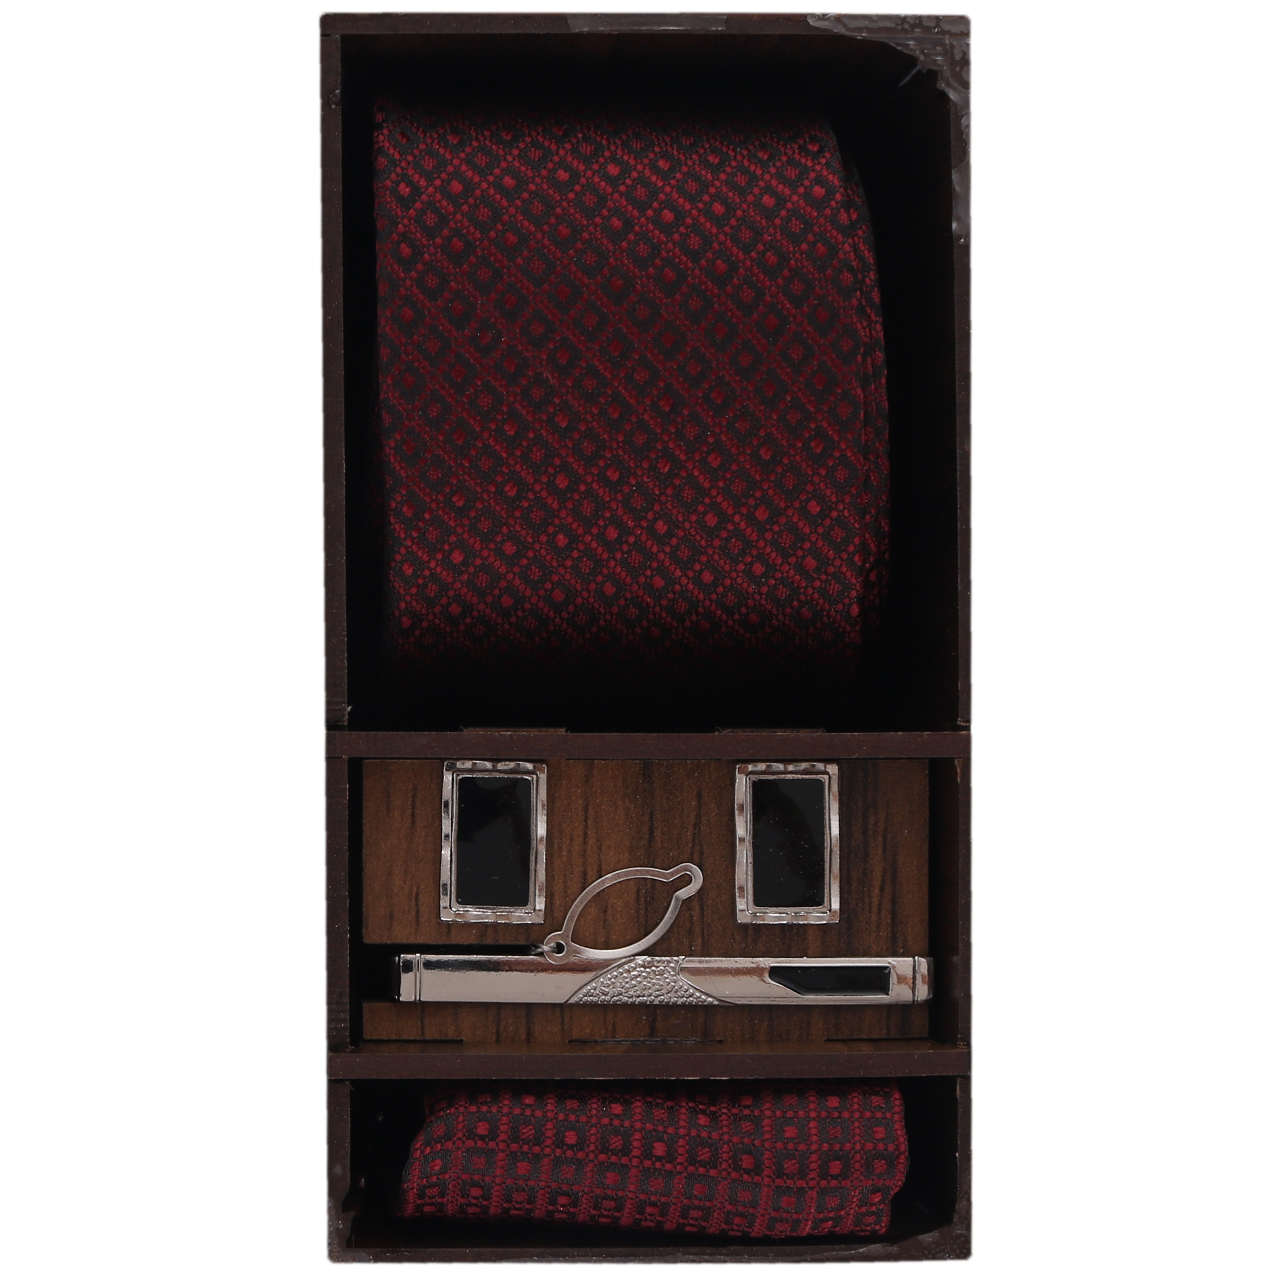 ست کراوات و دستمال جیب مردانه مدل PJ-105223